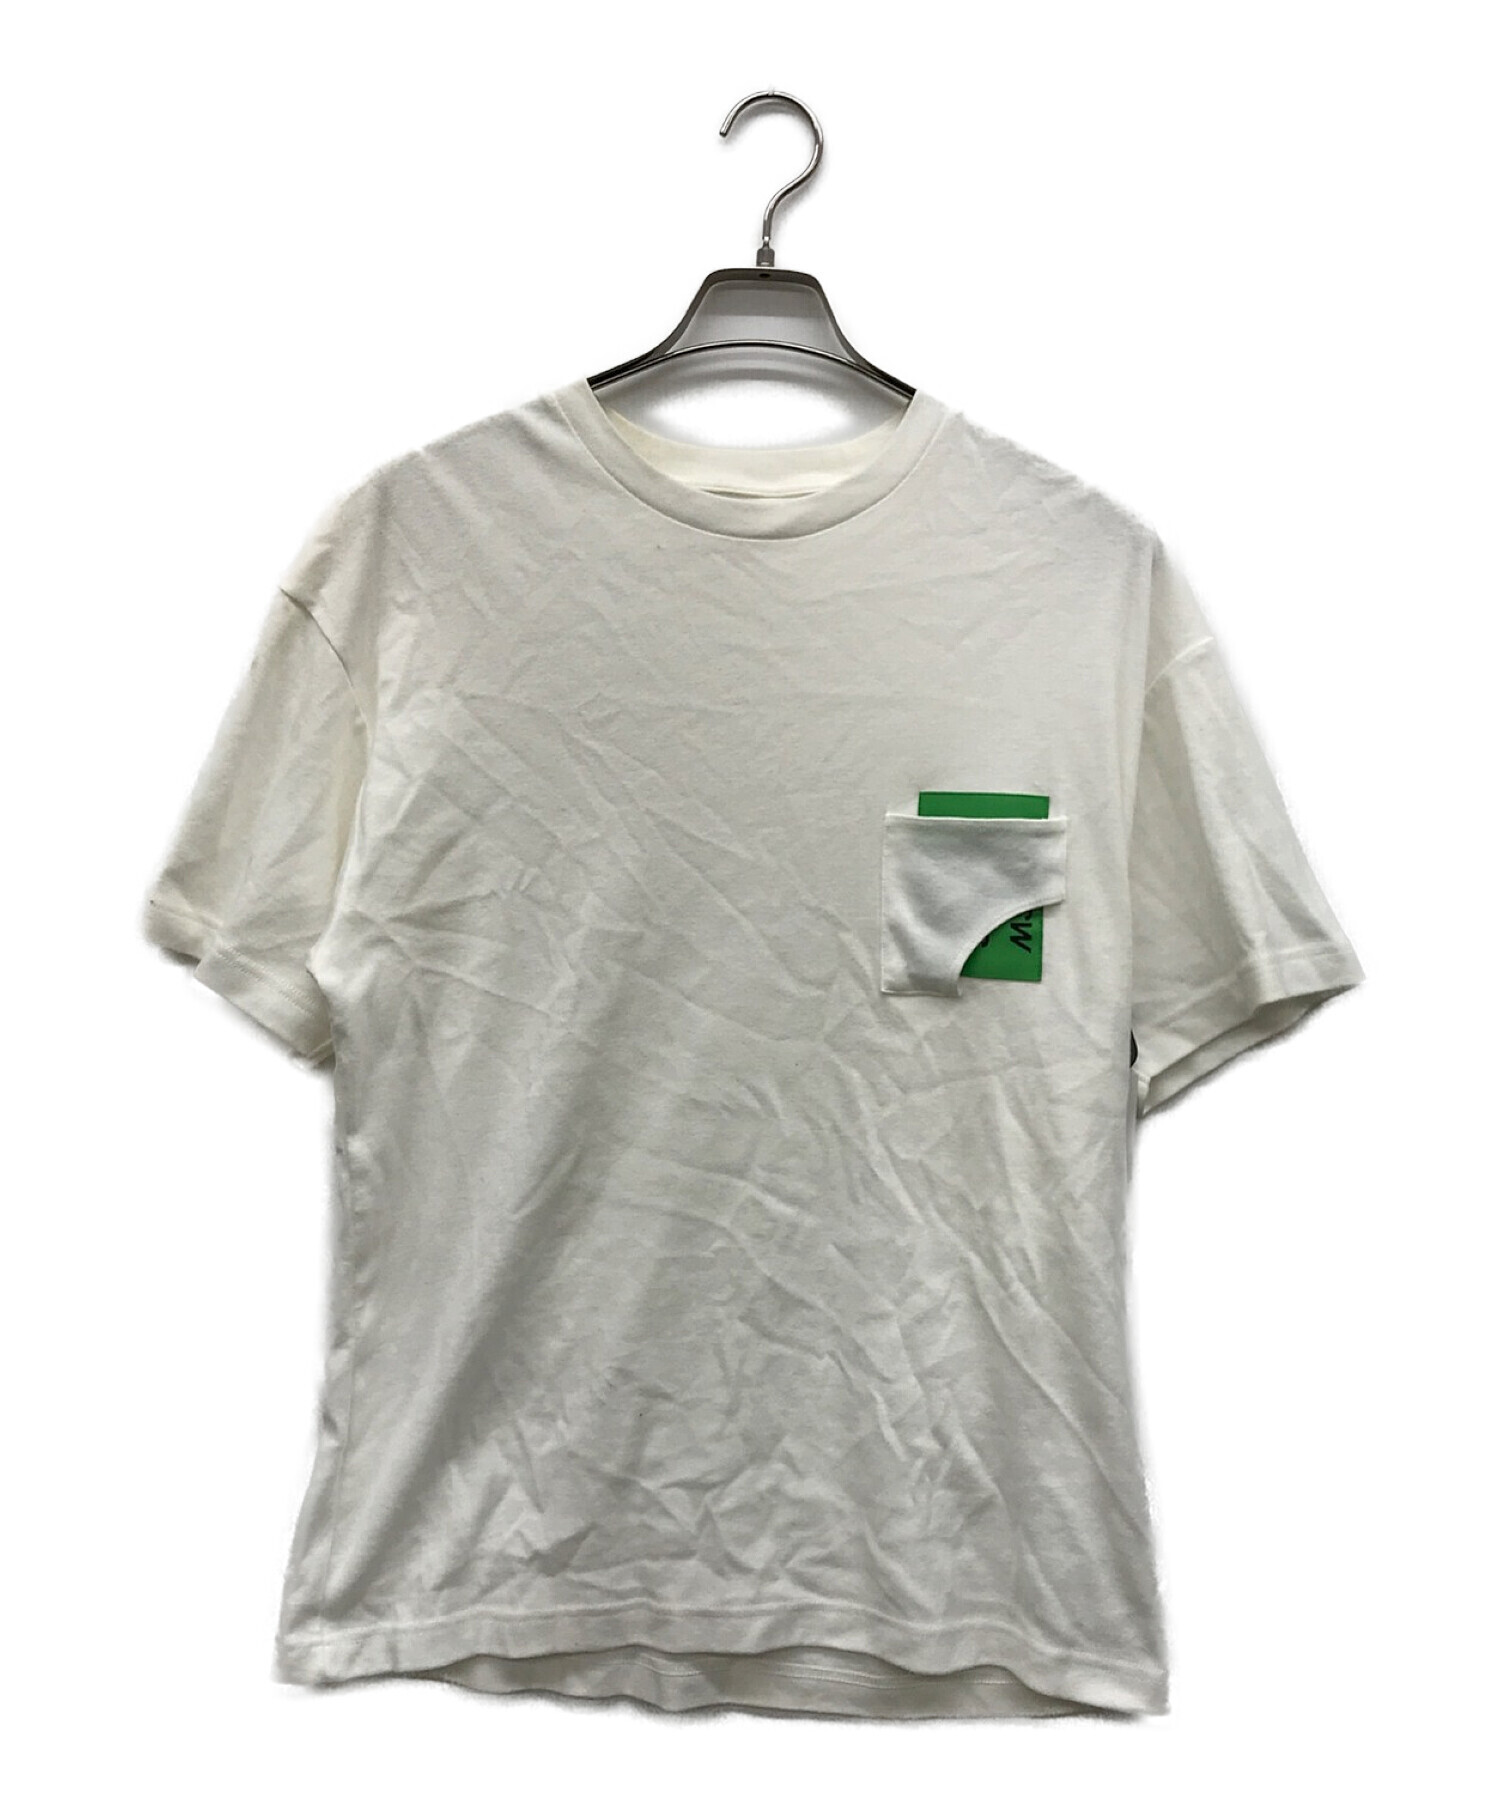 TTT MSW (ティーモダンストリートウェア) Tシャツ ホワイト サイズ:M